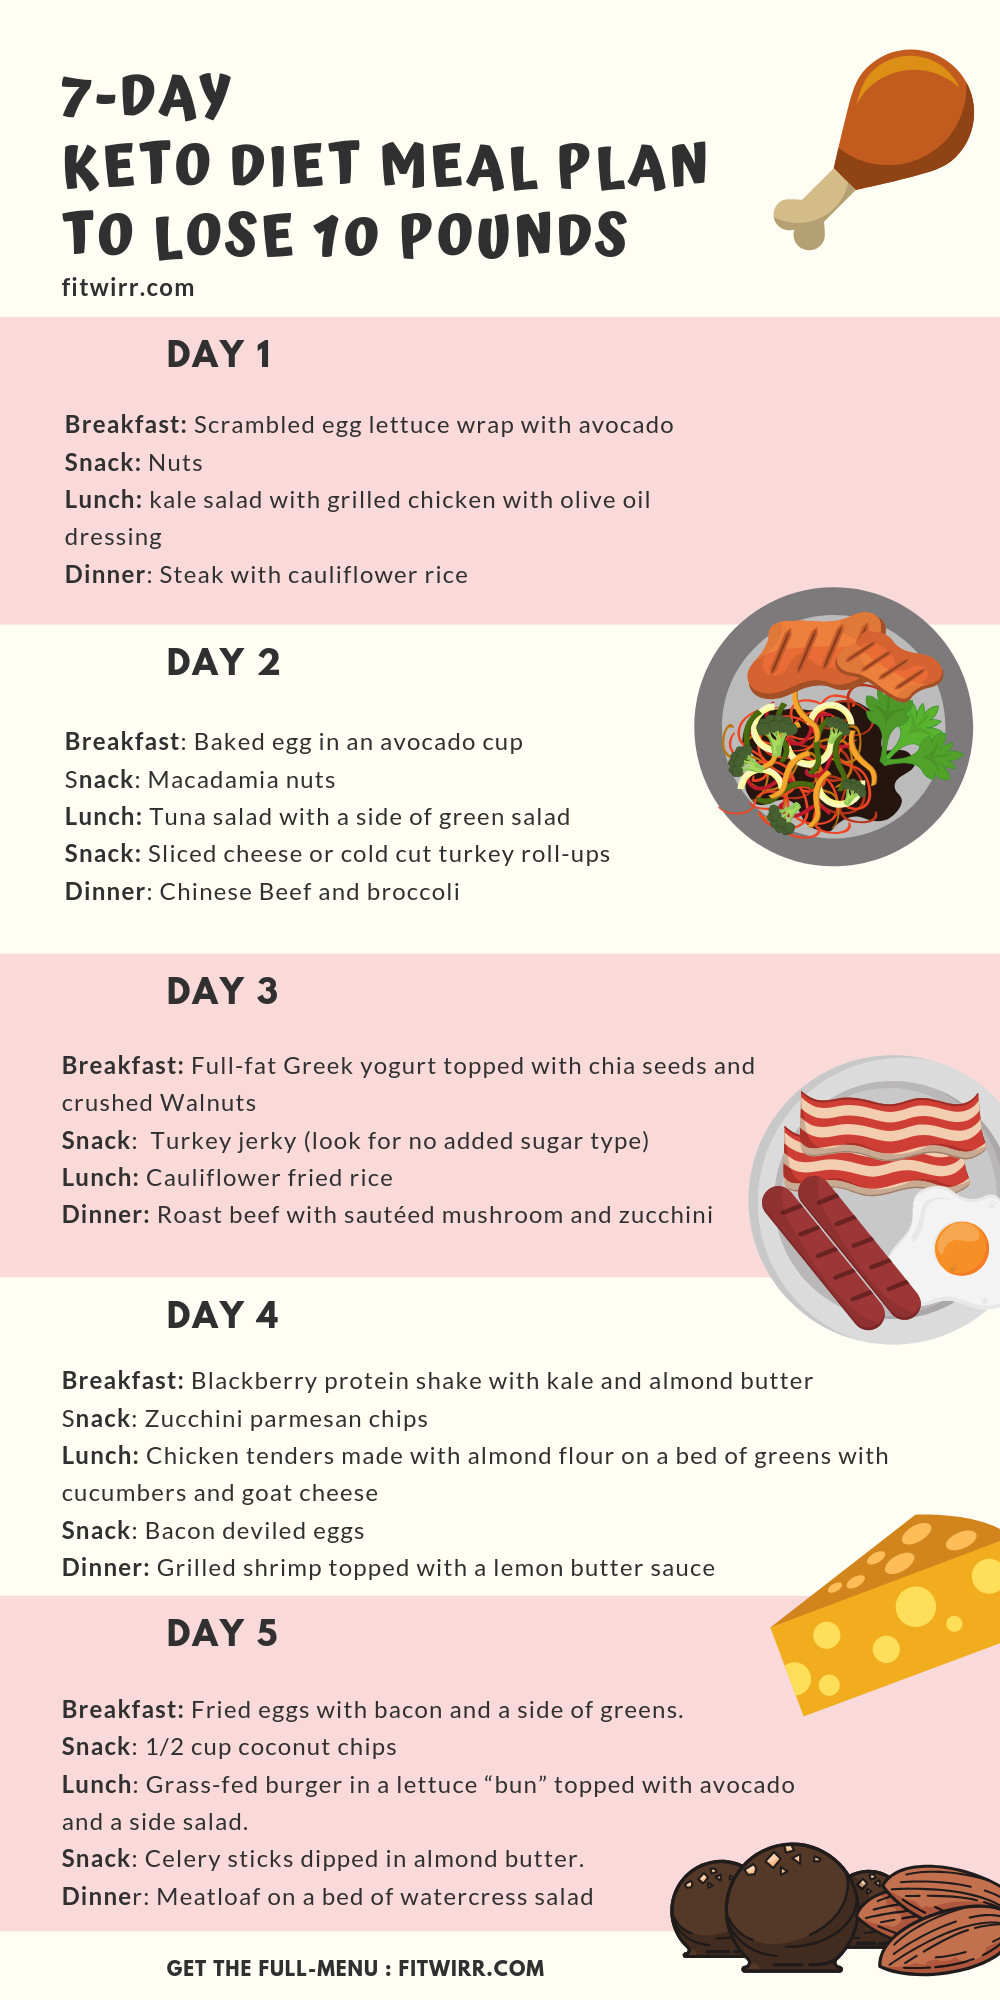 Keto Diet For Beginners Keto Diet For Beginners Week 1 Meal Plan
 Keto Diet Menu 7 Day Keto Meal Plan for Beginners to Lose